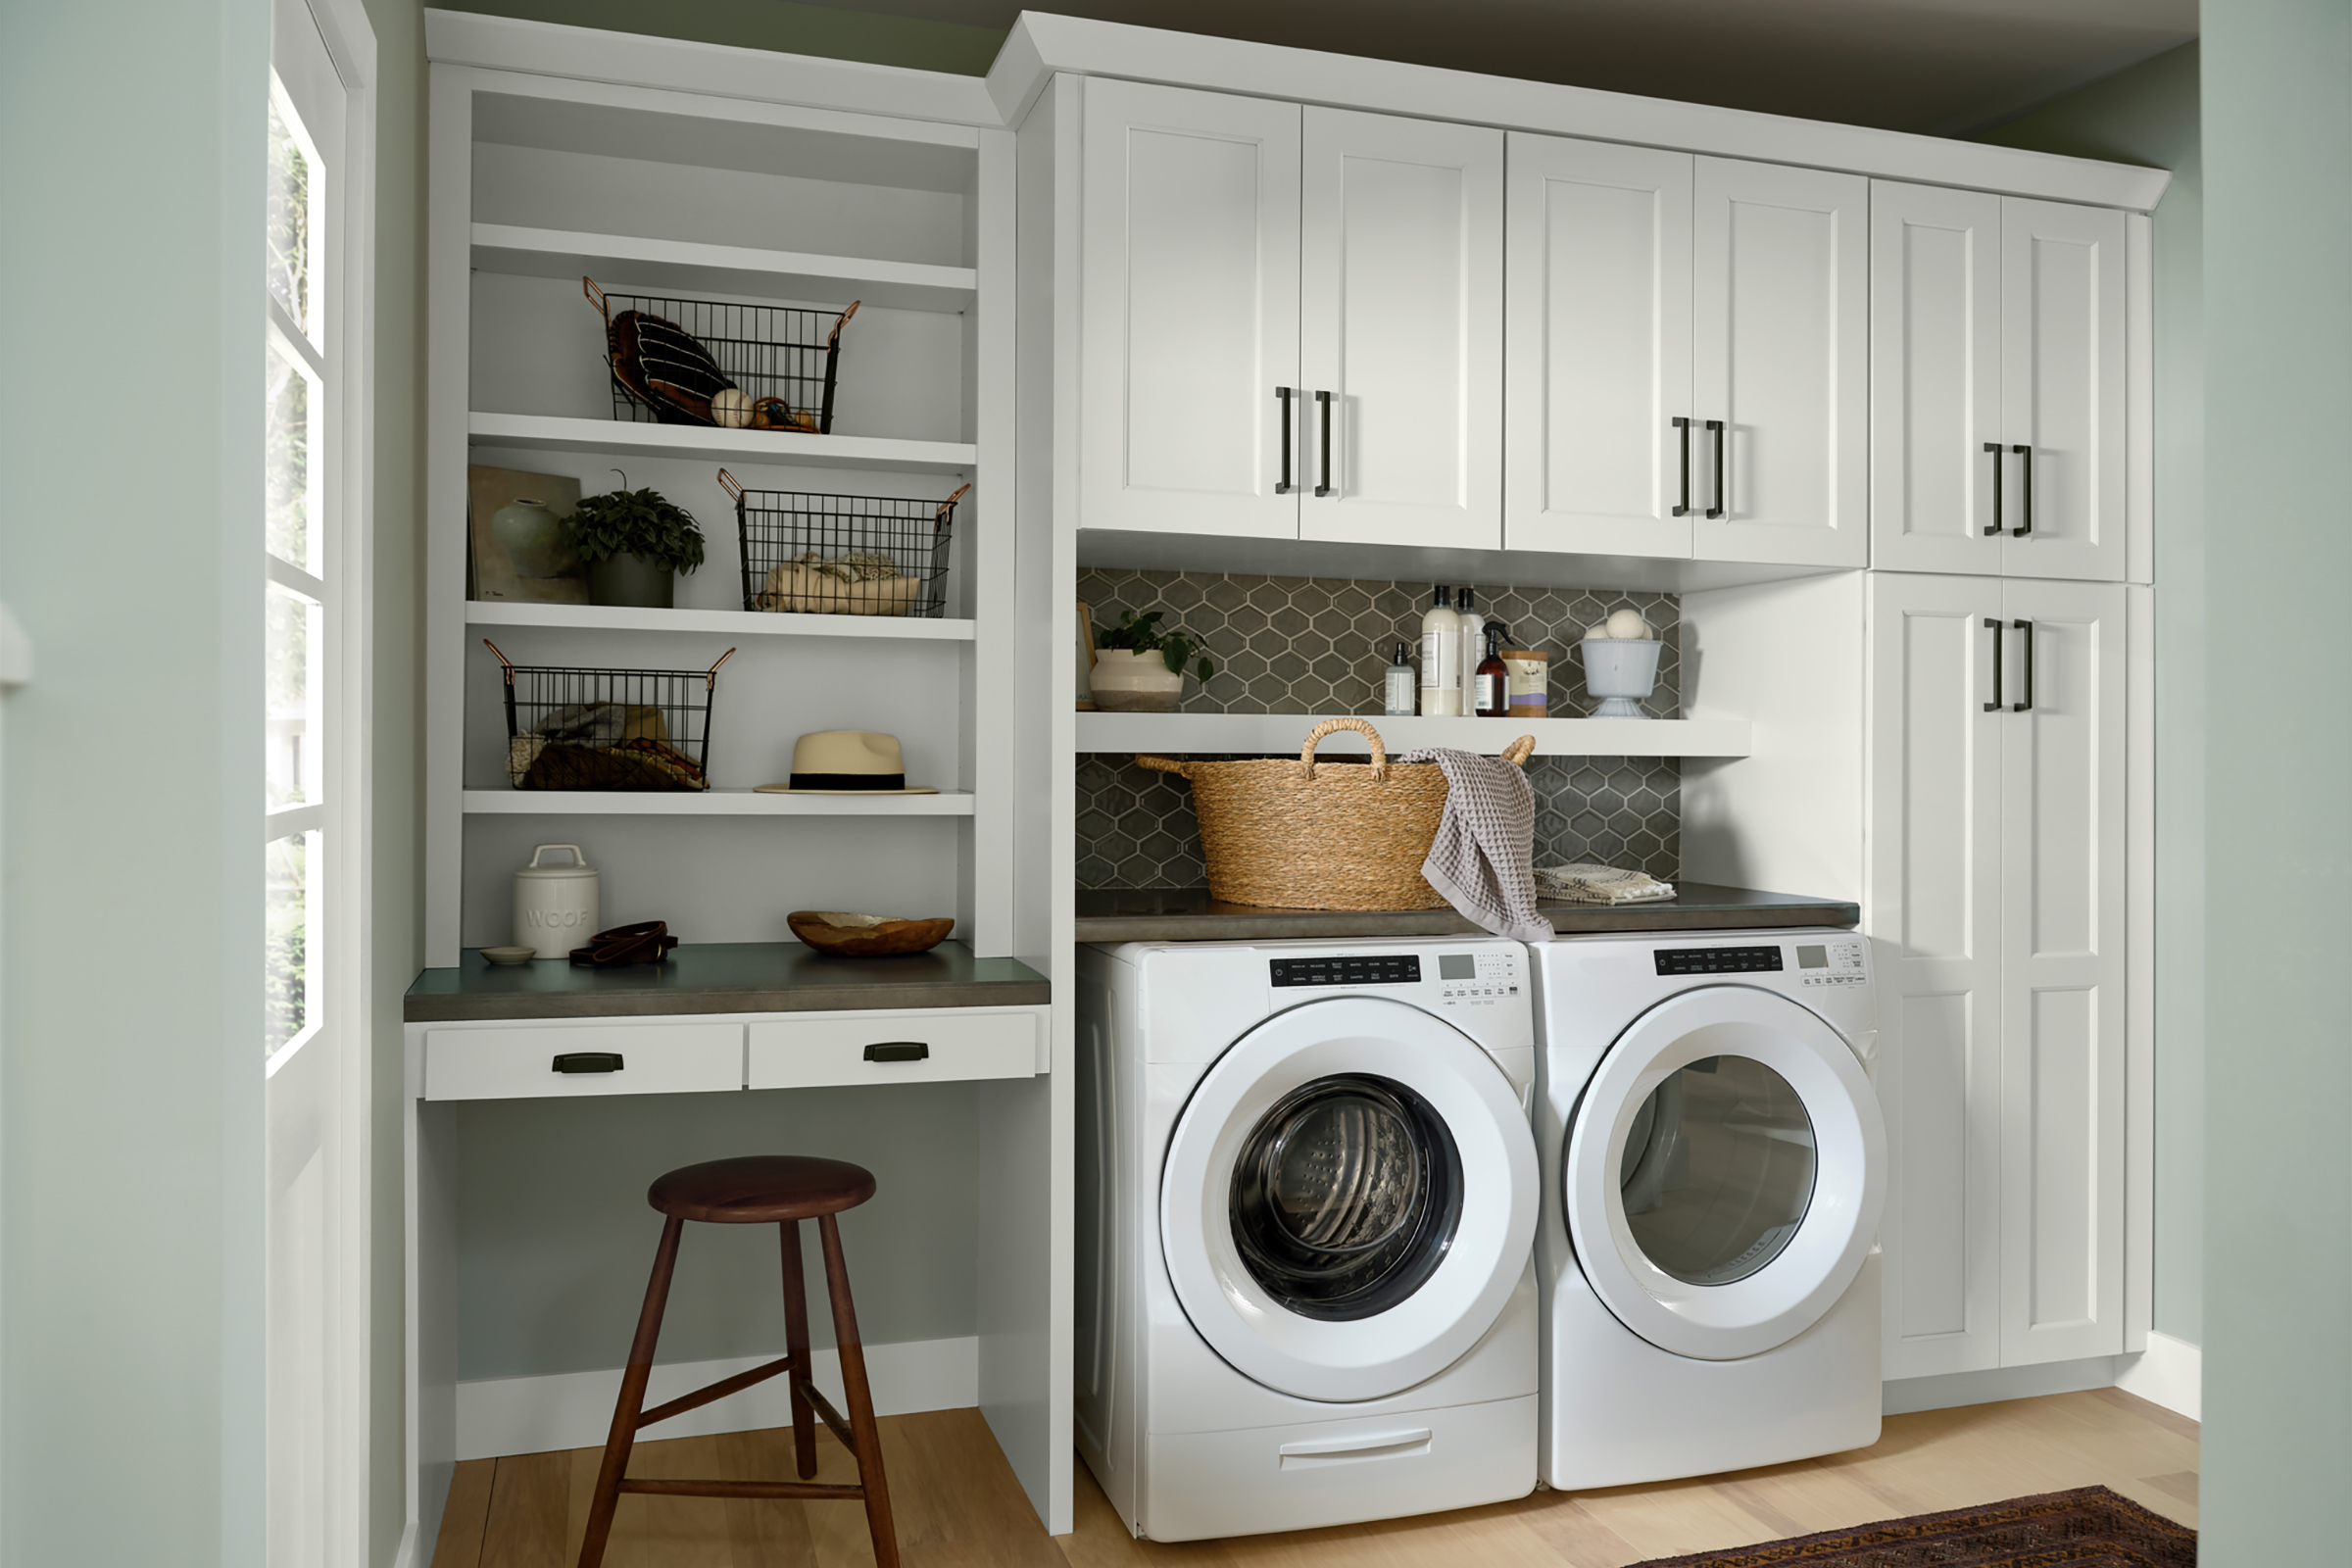 KraftMaid White washer dryer cabinets with corner workspace nook